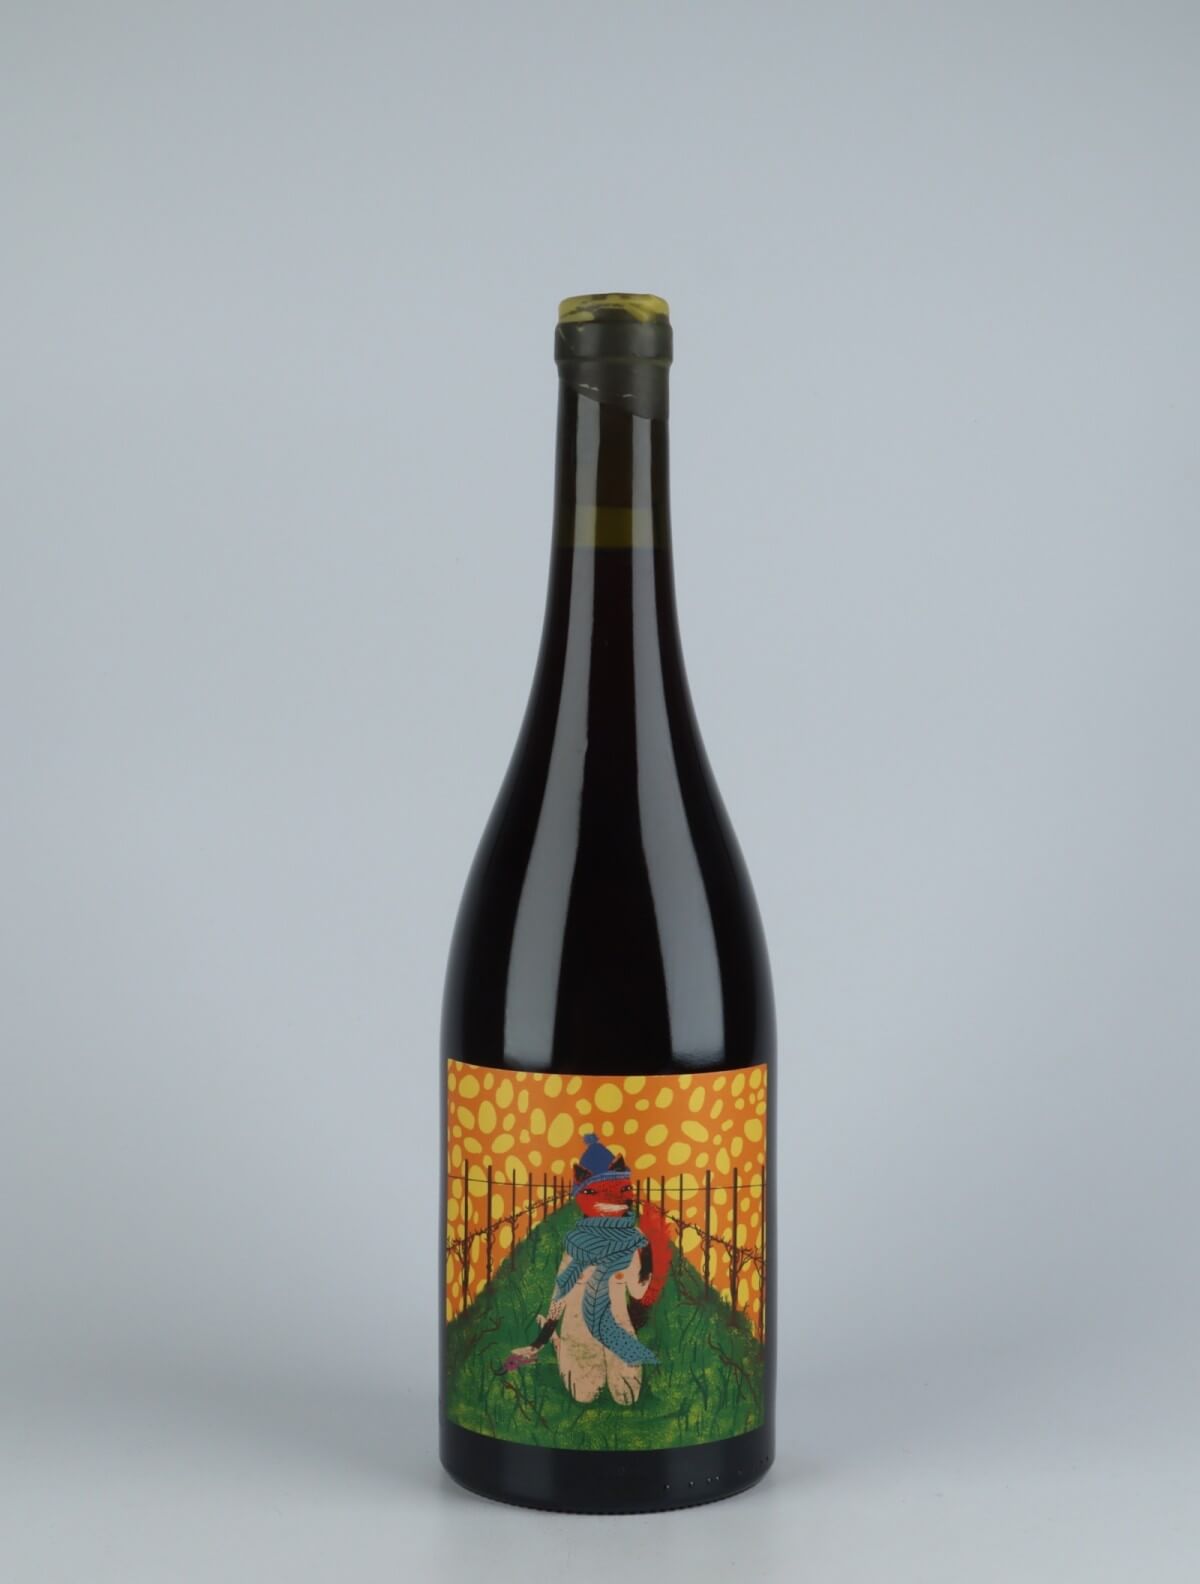 En flaske 2020 Invierno Rødvin fra Kindeli, Nelson i New Zealand